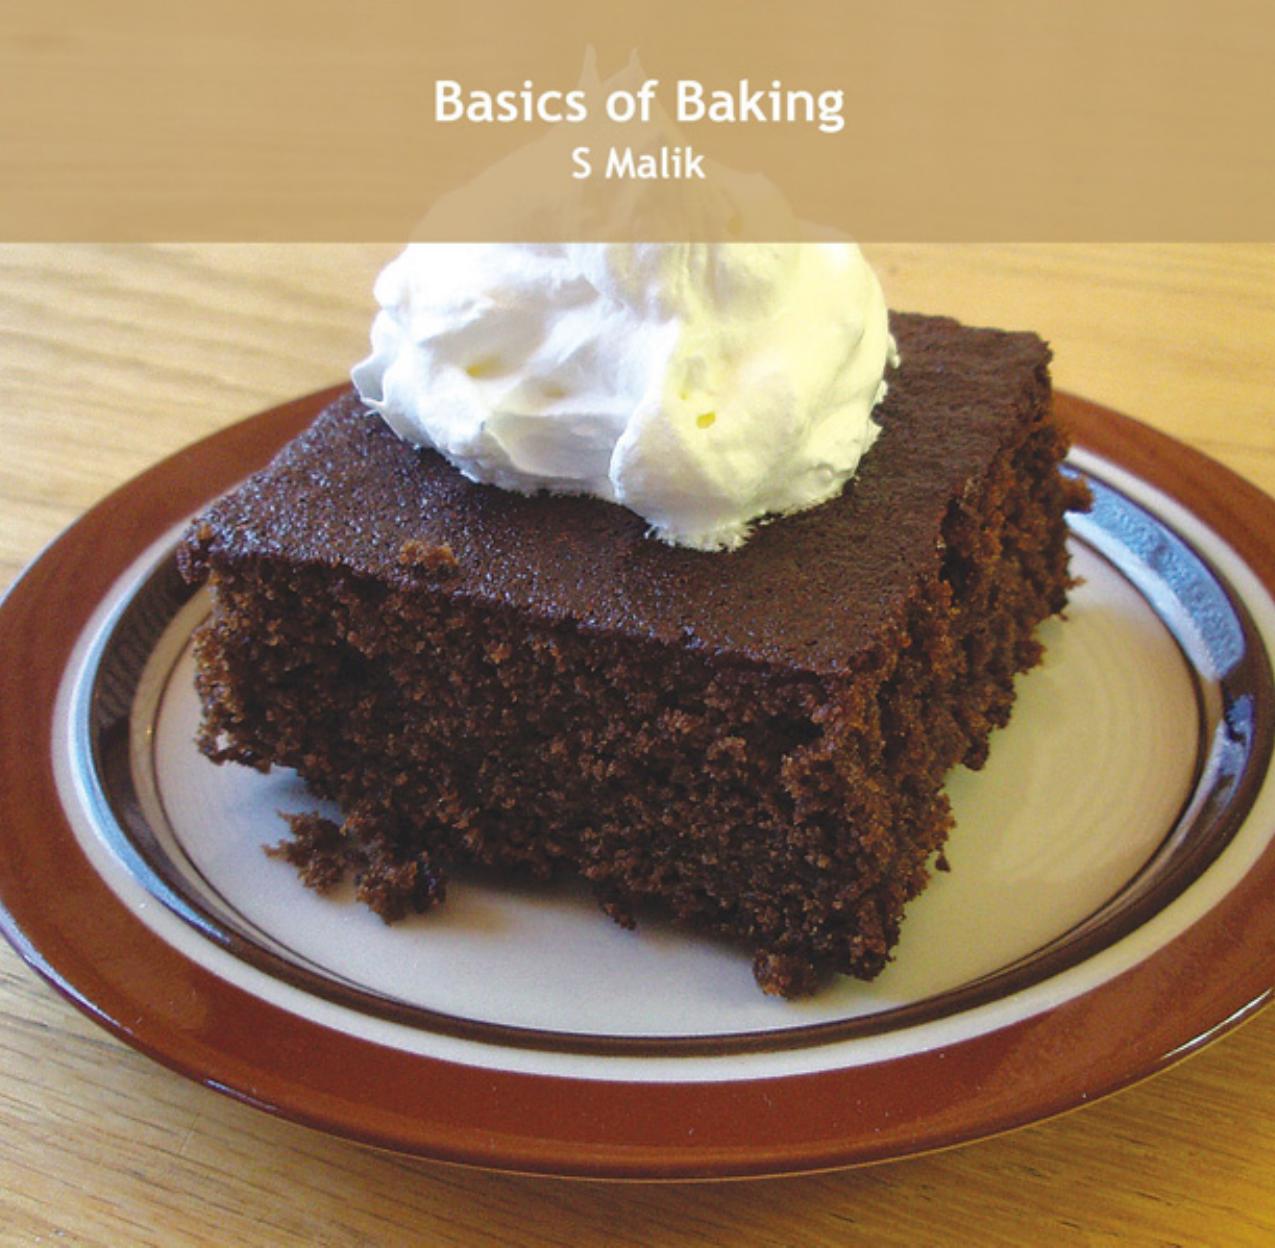 Basics of Baking by S. Malik